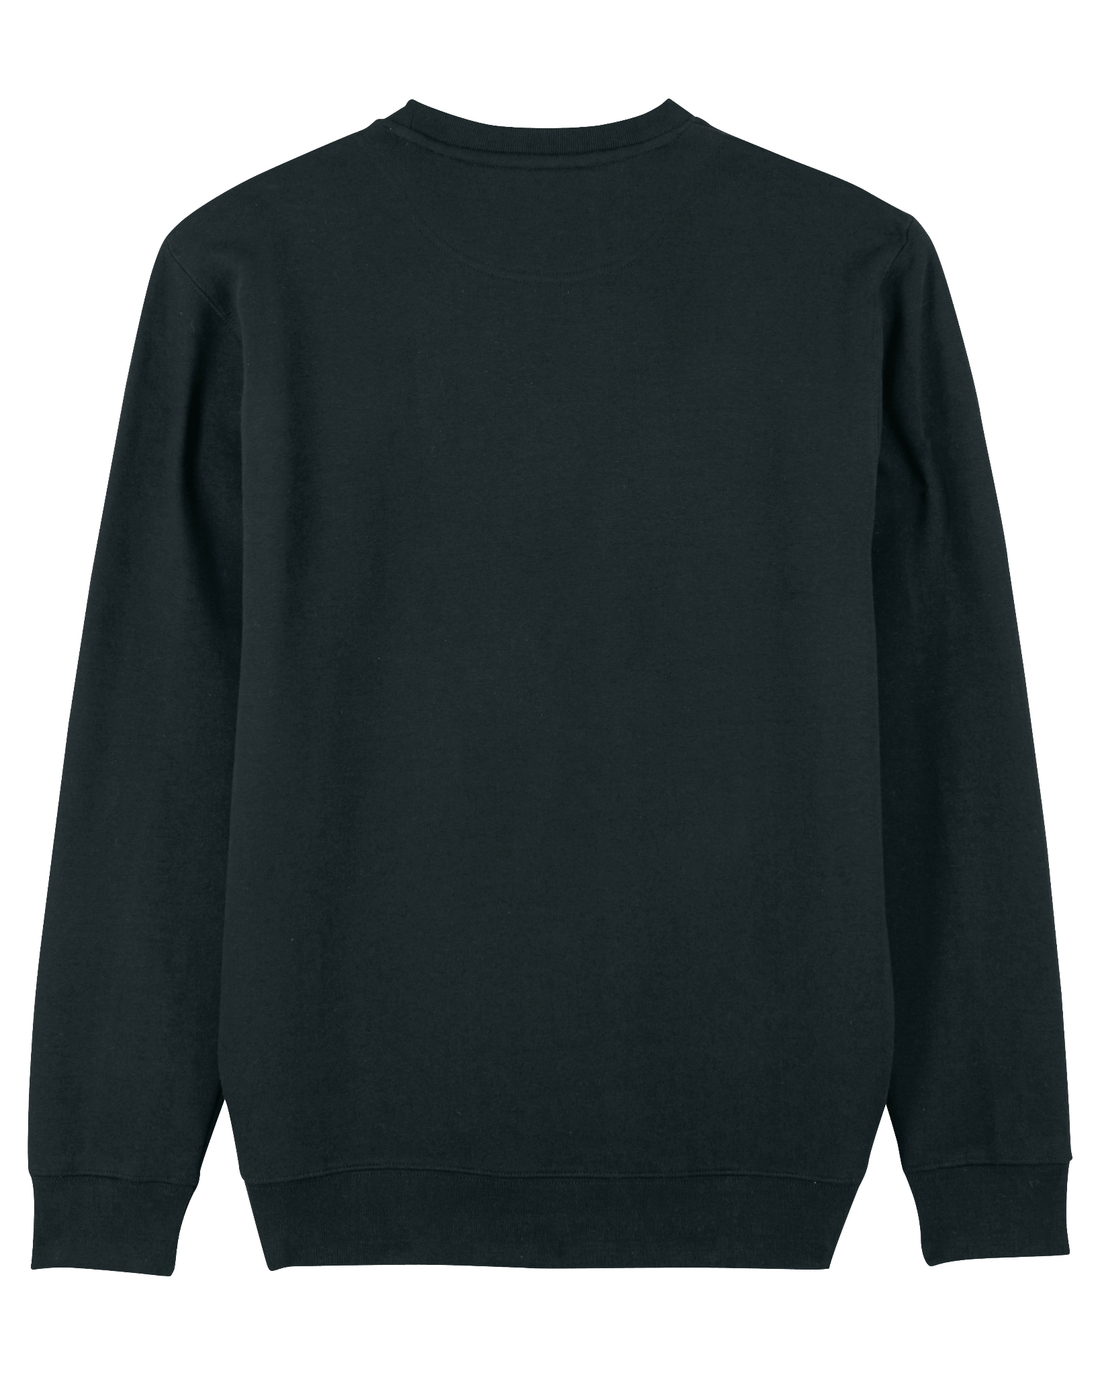 Black Skater Sweatshirt, Surfer Dog Back Print